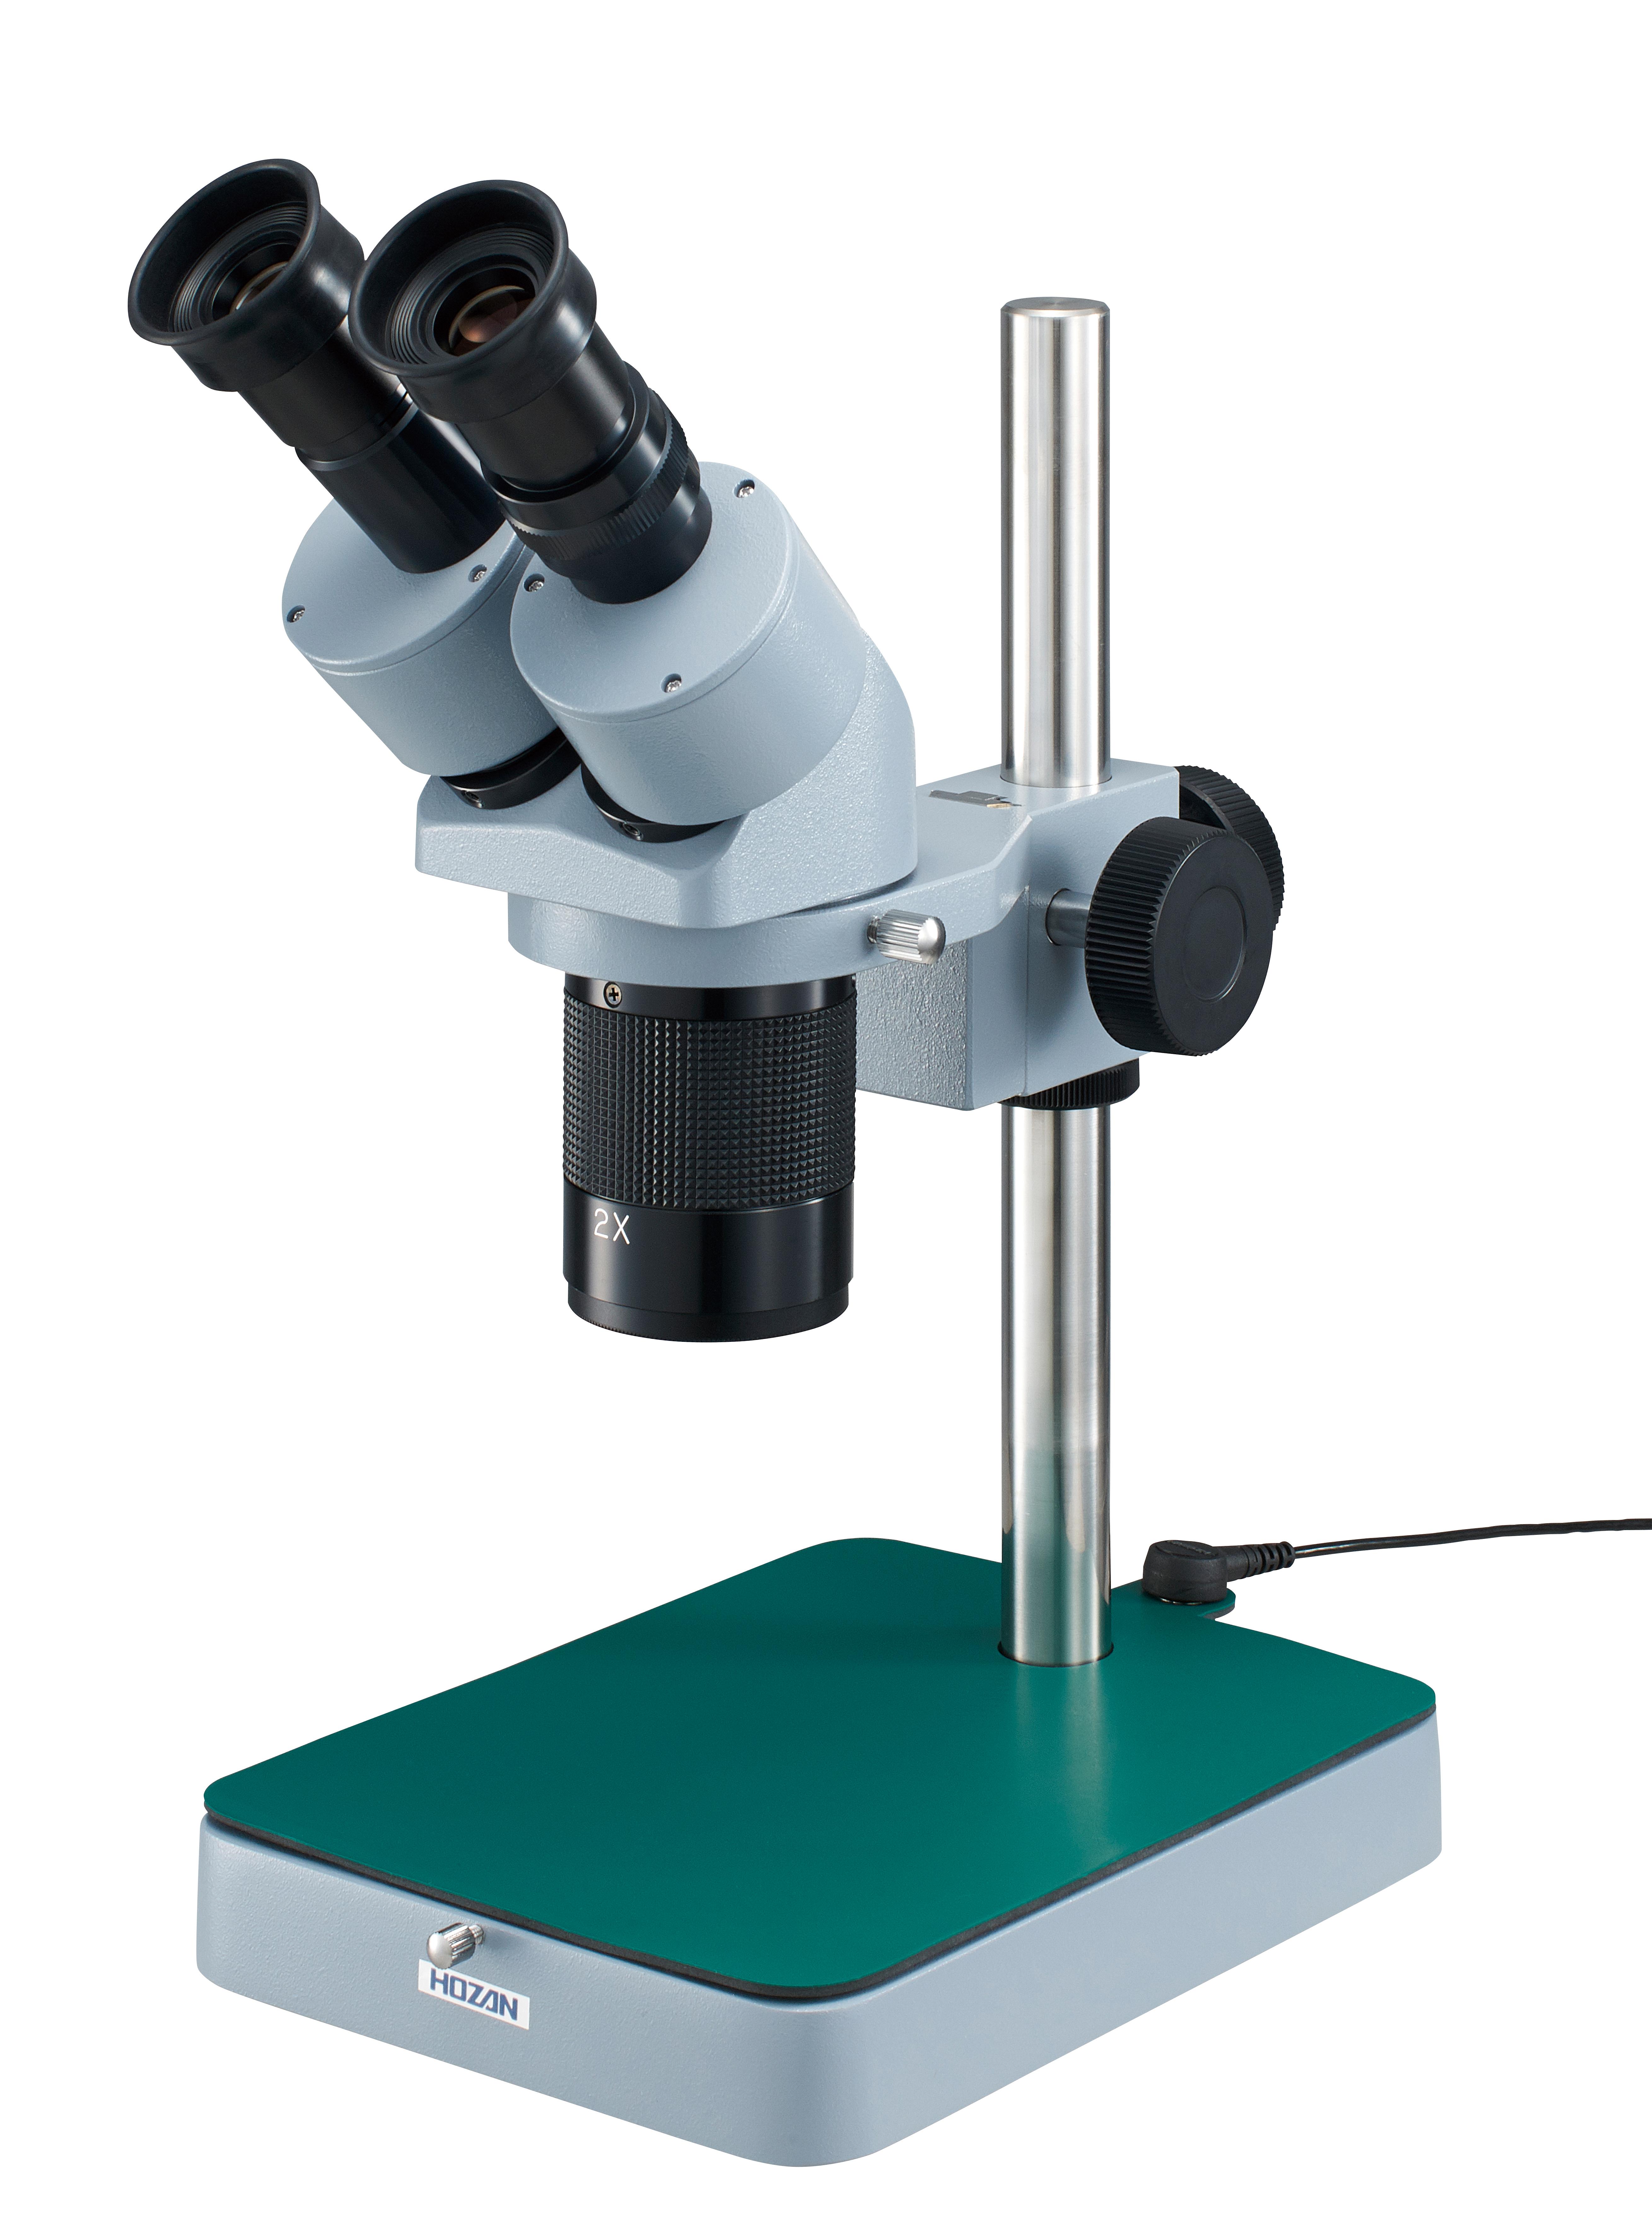 Stereoscopic Microscope L-50